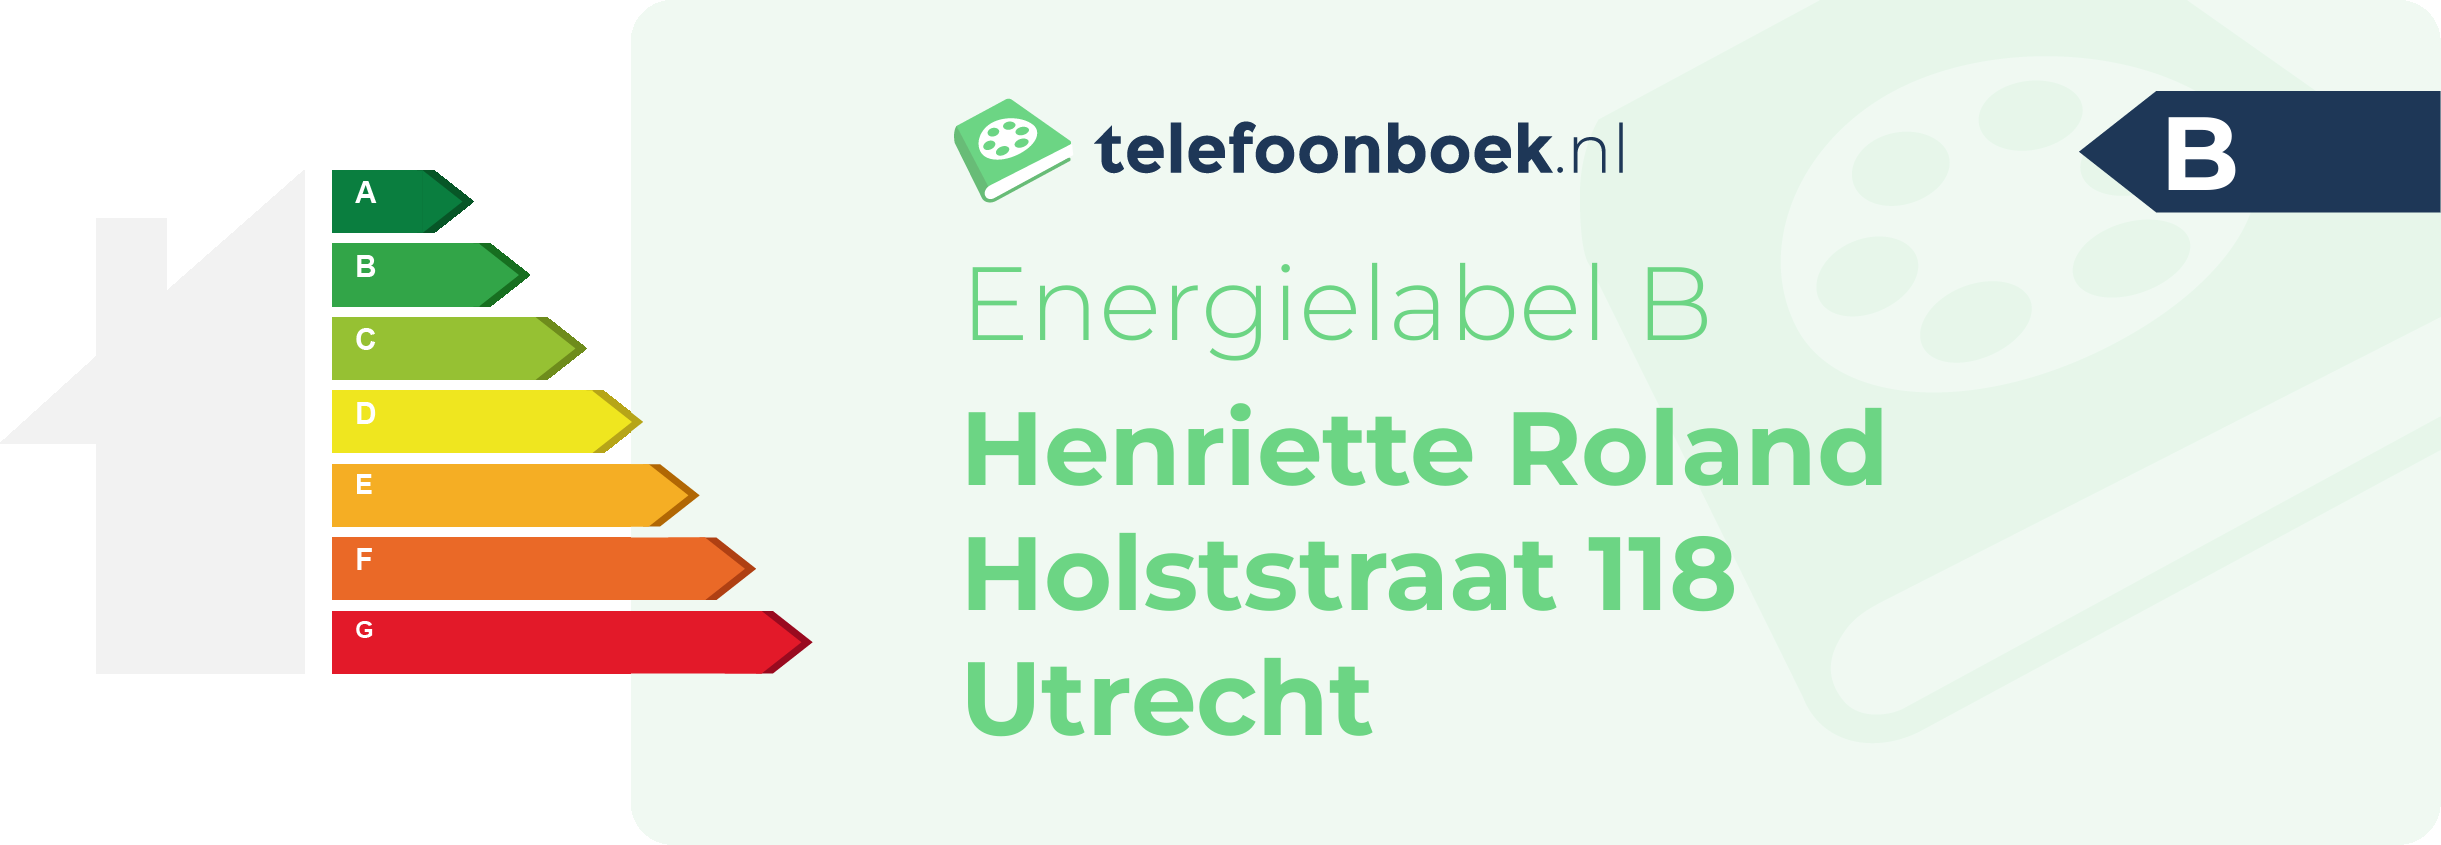 Energielabel Henriette Roland Holststraat 118 Utrecht